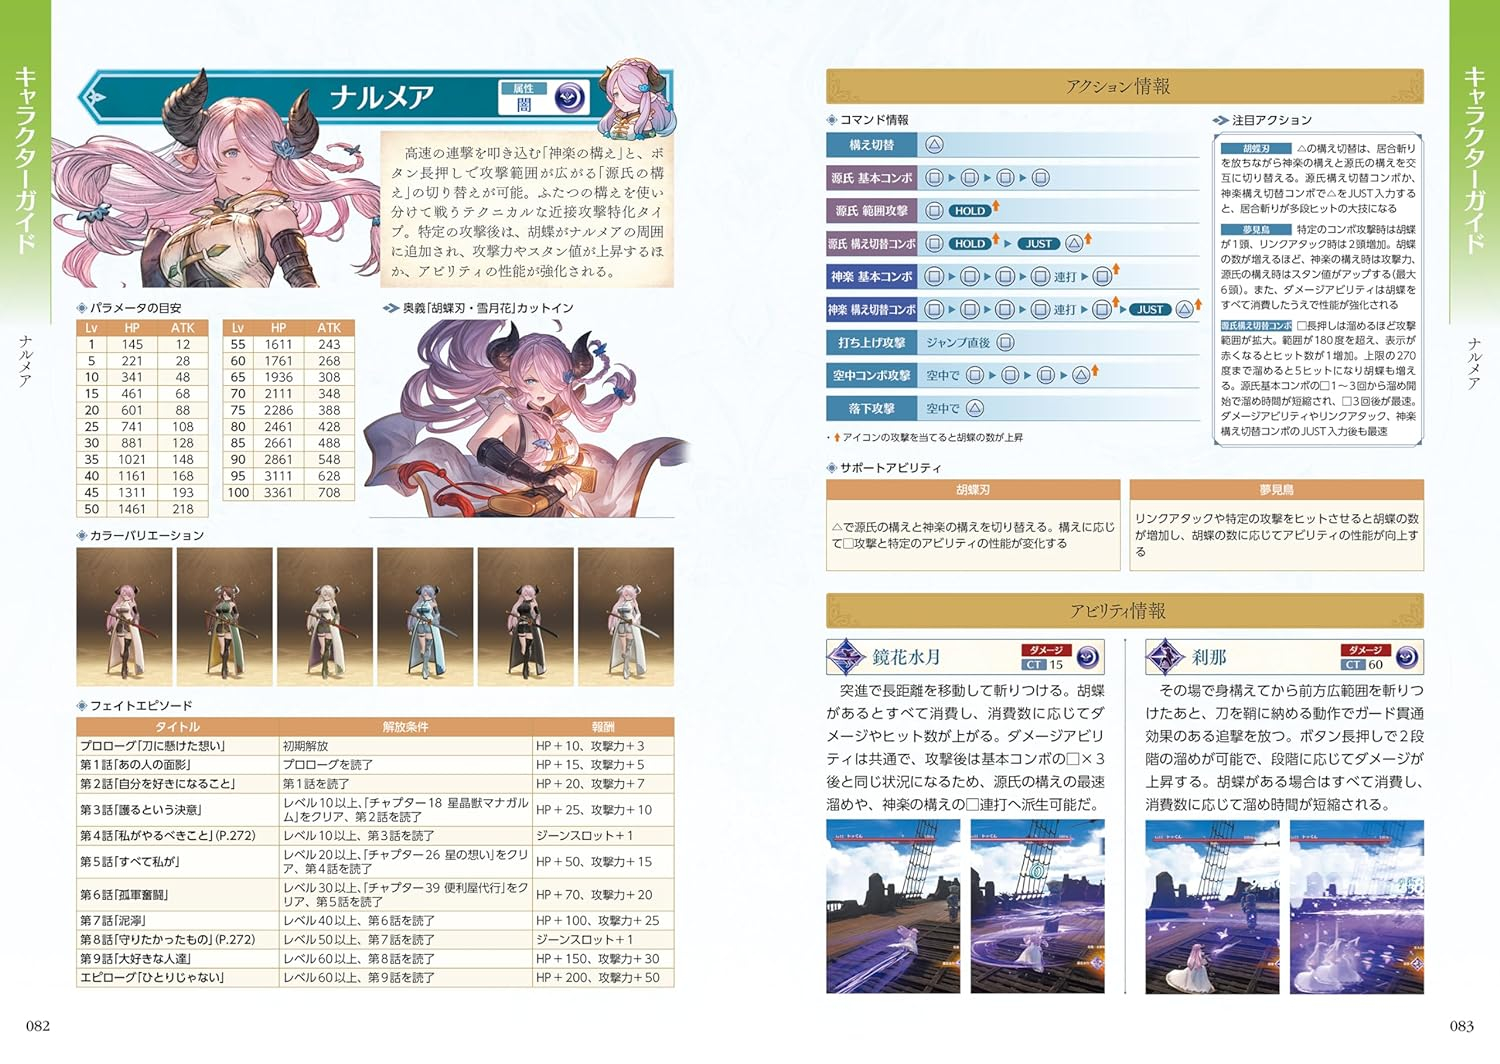 《碧藍幻想Relink》官方攻略書現已發售含購入特典